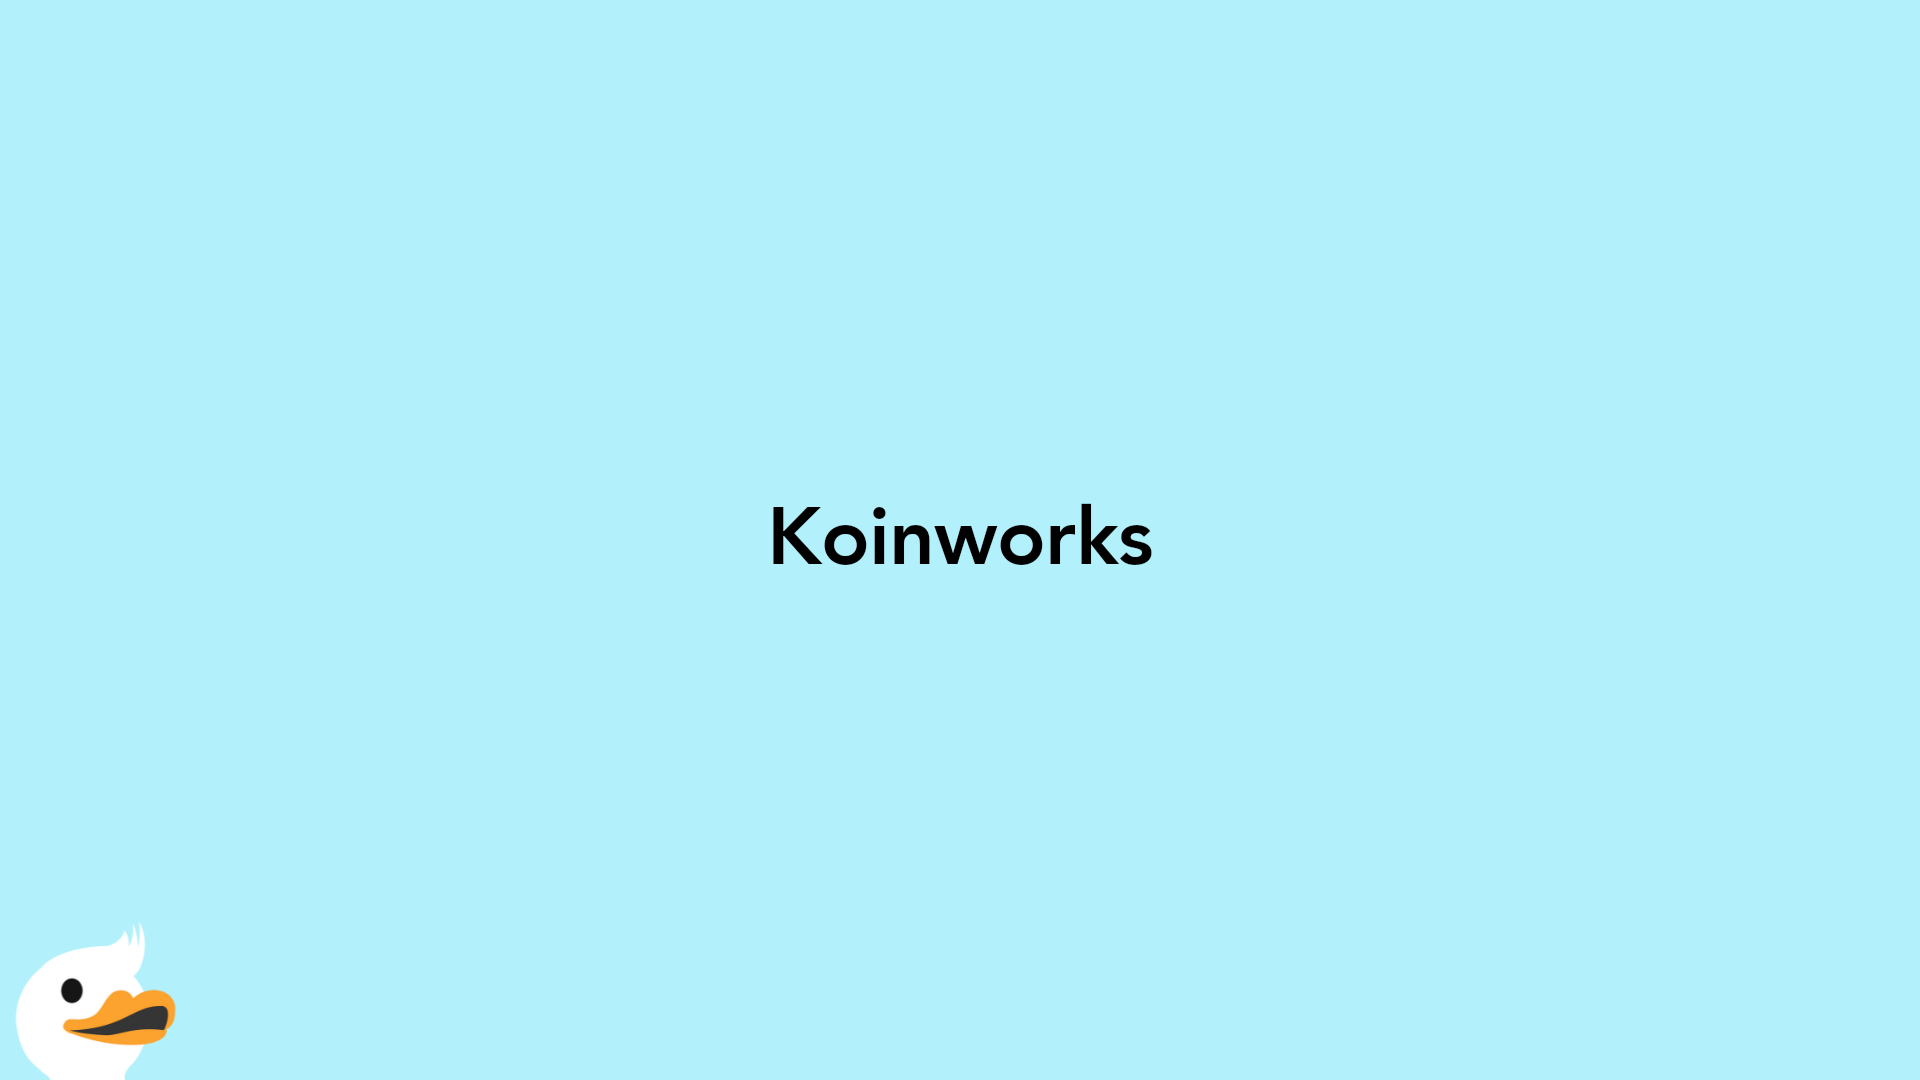 Koinworks